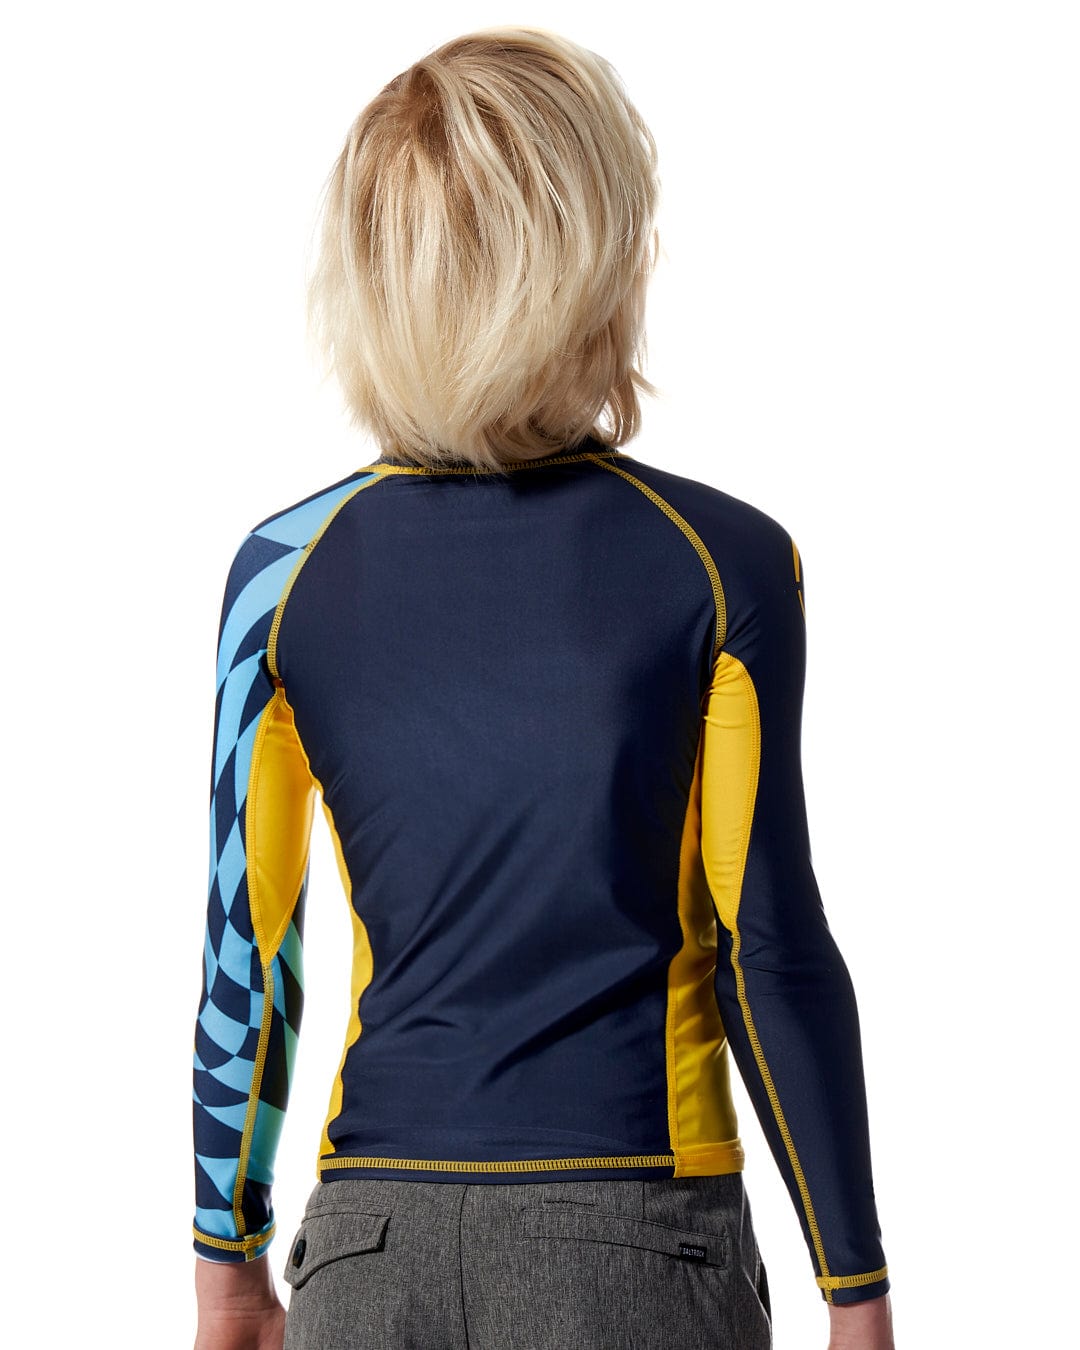 The back view of a woman wearing a Saltrock Warp - Kids Long Sleeve Rash Vest - Blue.